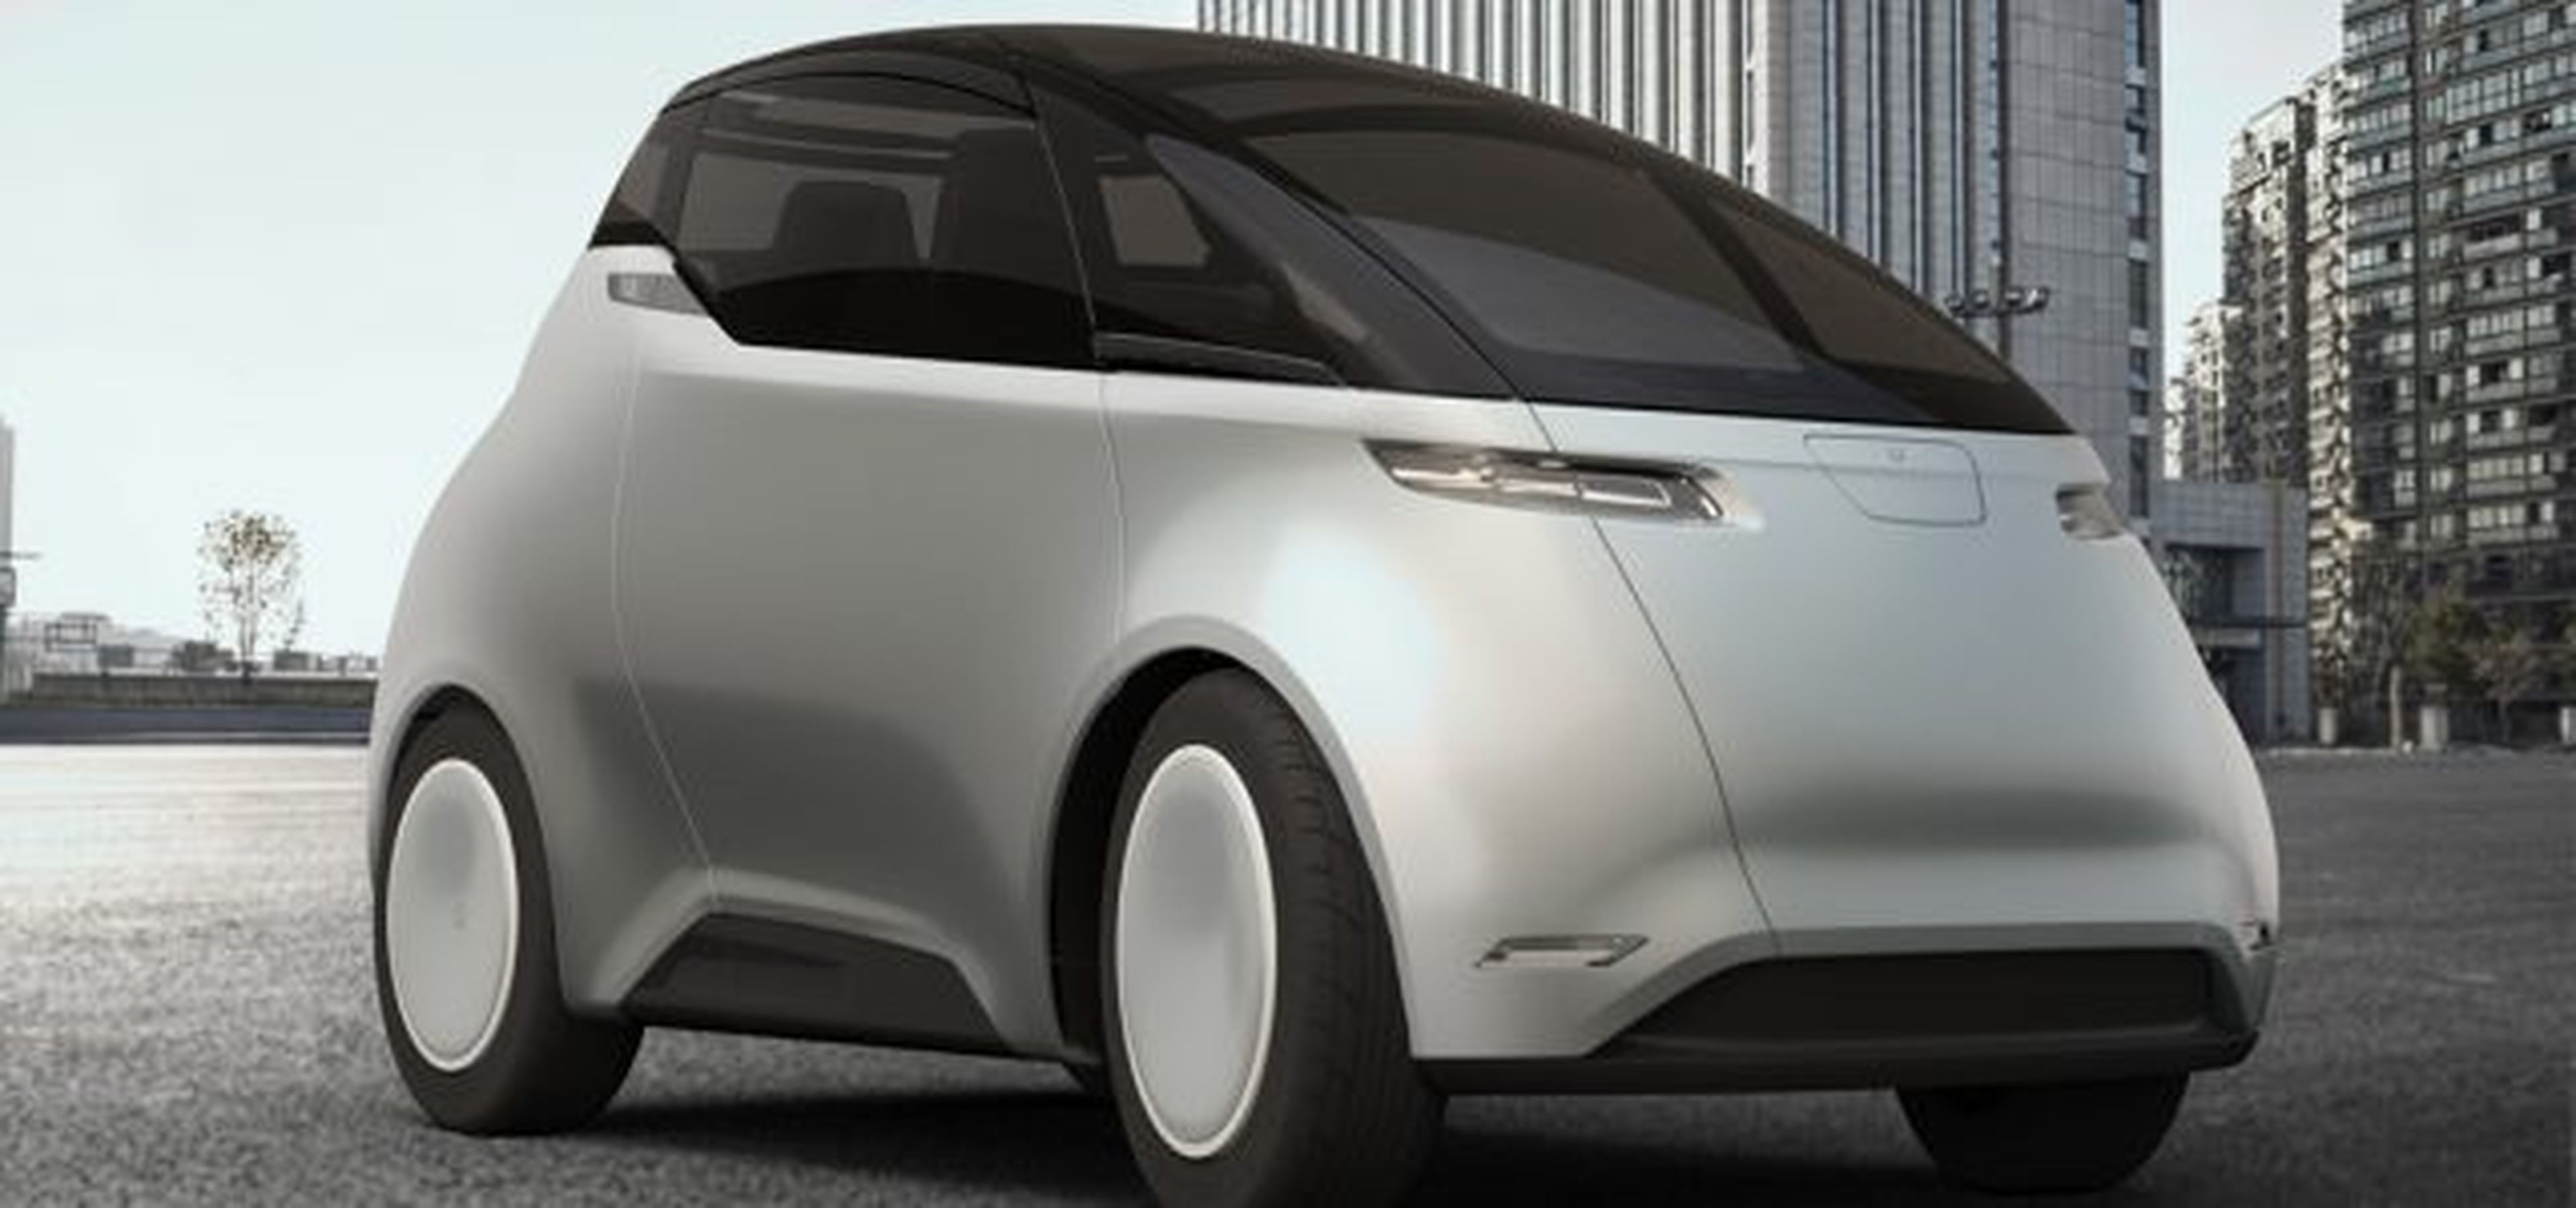 Uniti, el coche eléctrico que se vende en Media Markt